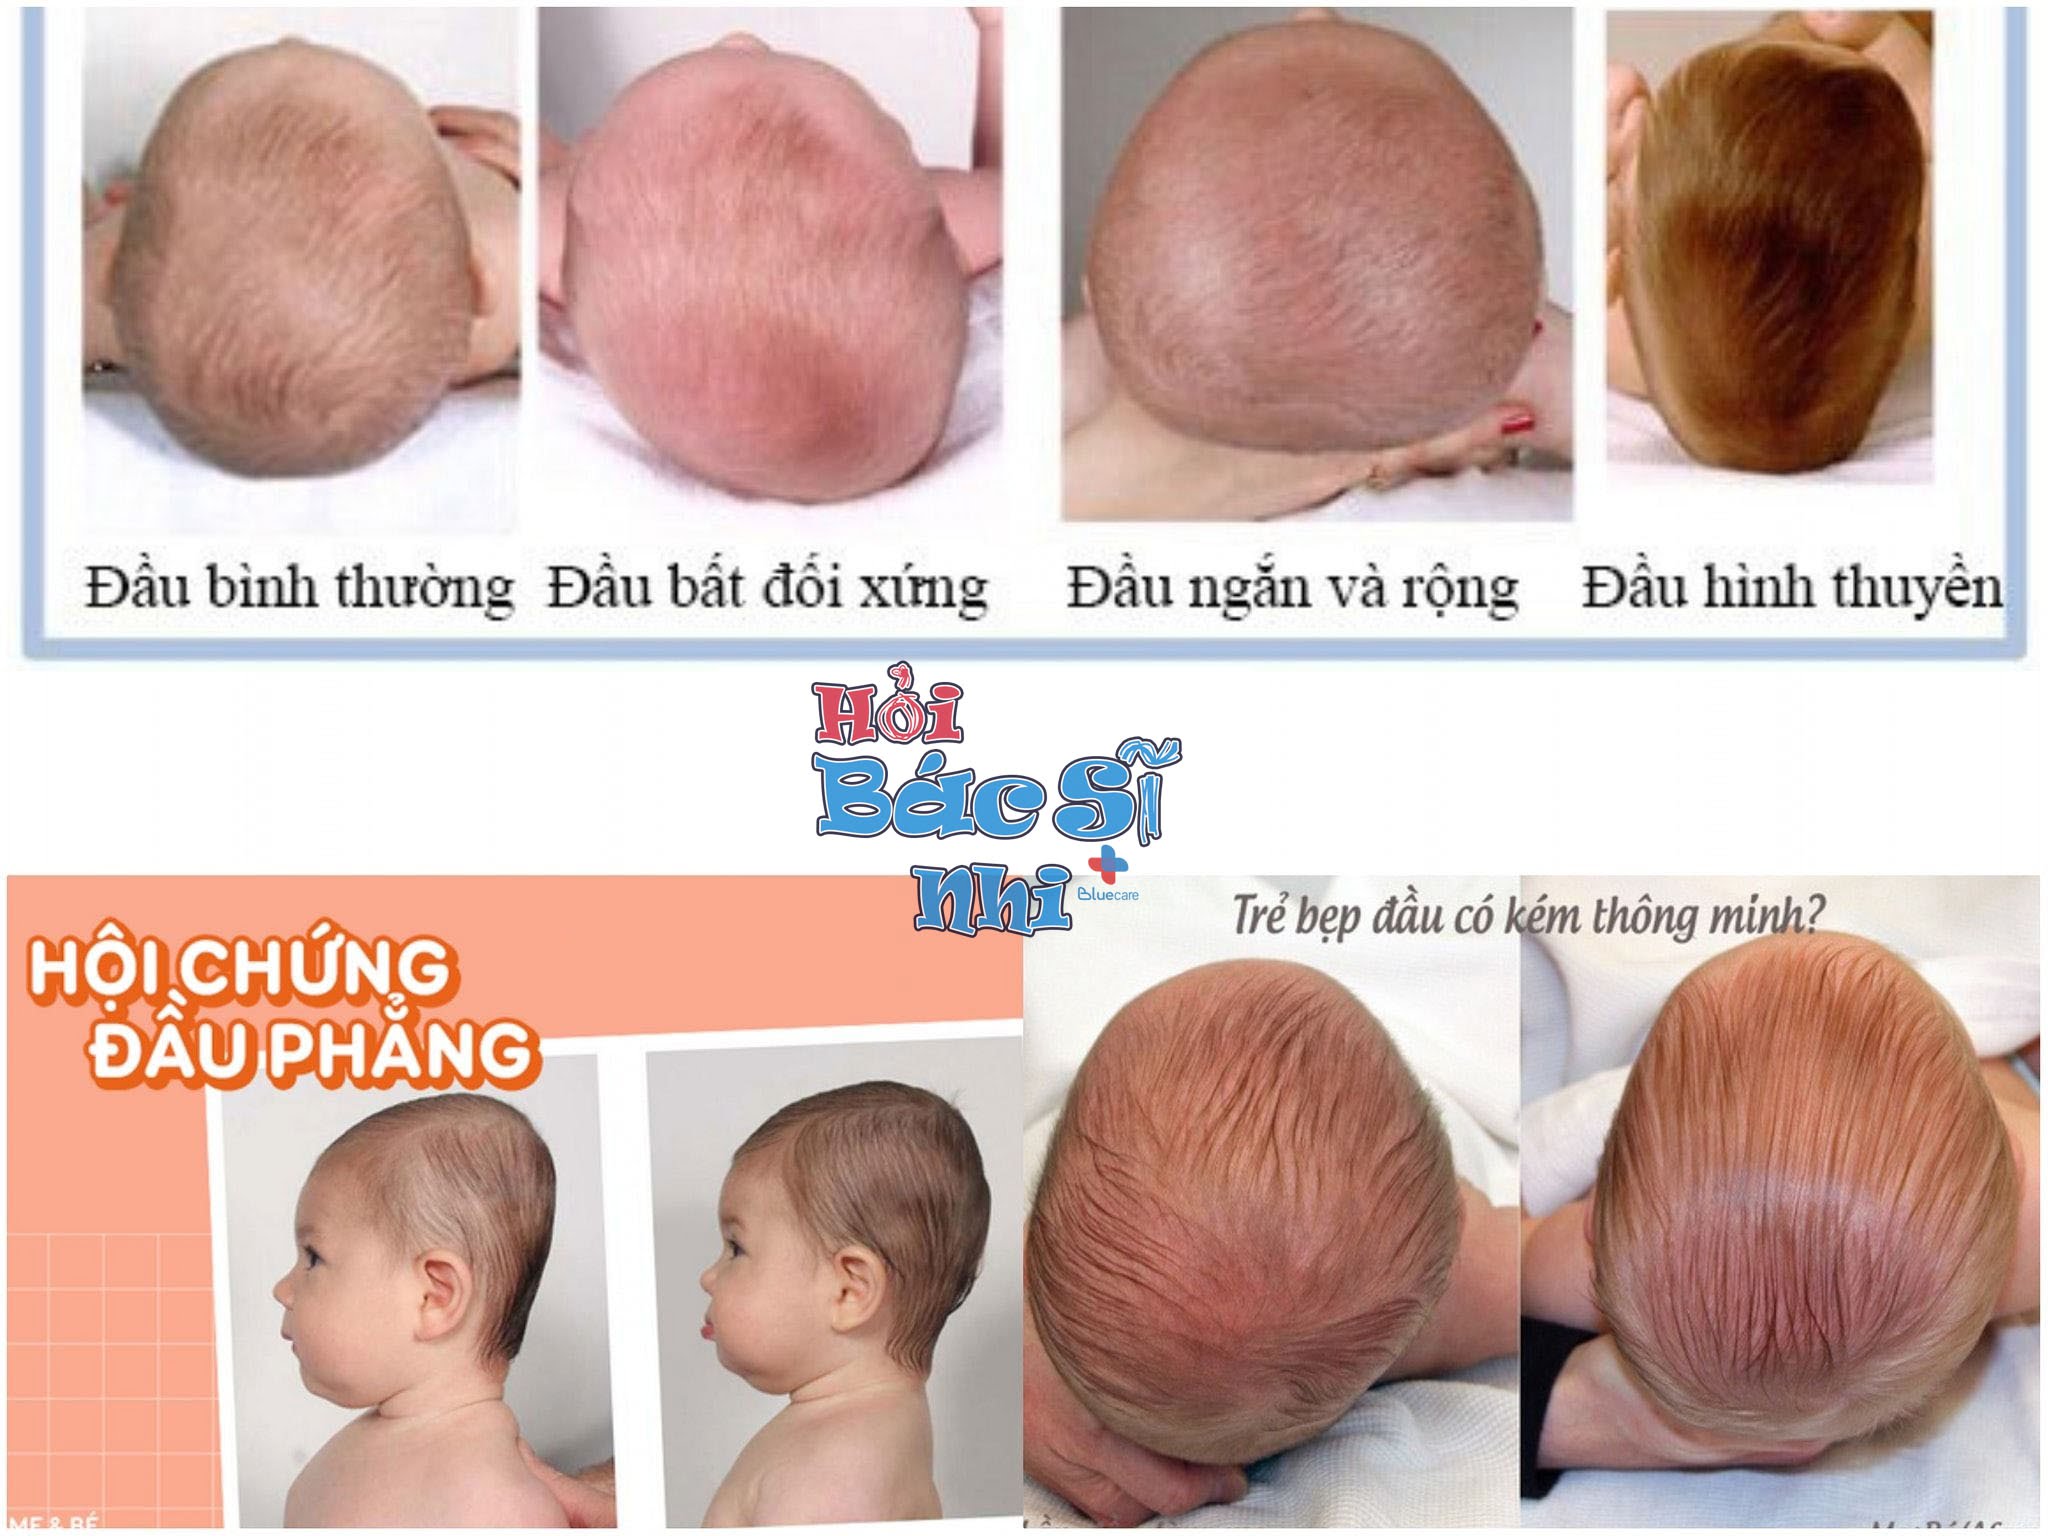 Đối với trẻ sơ sinh bị đầu bẹp, hãy cùng tìm hiểu những giải pháp hữu hiệu để giúp bé phát triển đầu hình tròn, giúp bé giảm thiểu các tác động xấu đến sức khỏe của bé nhé.